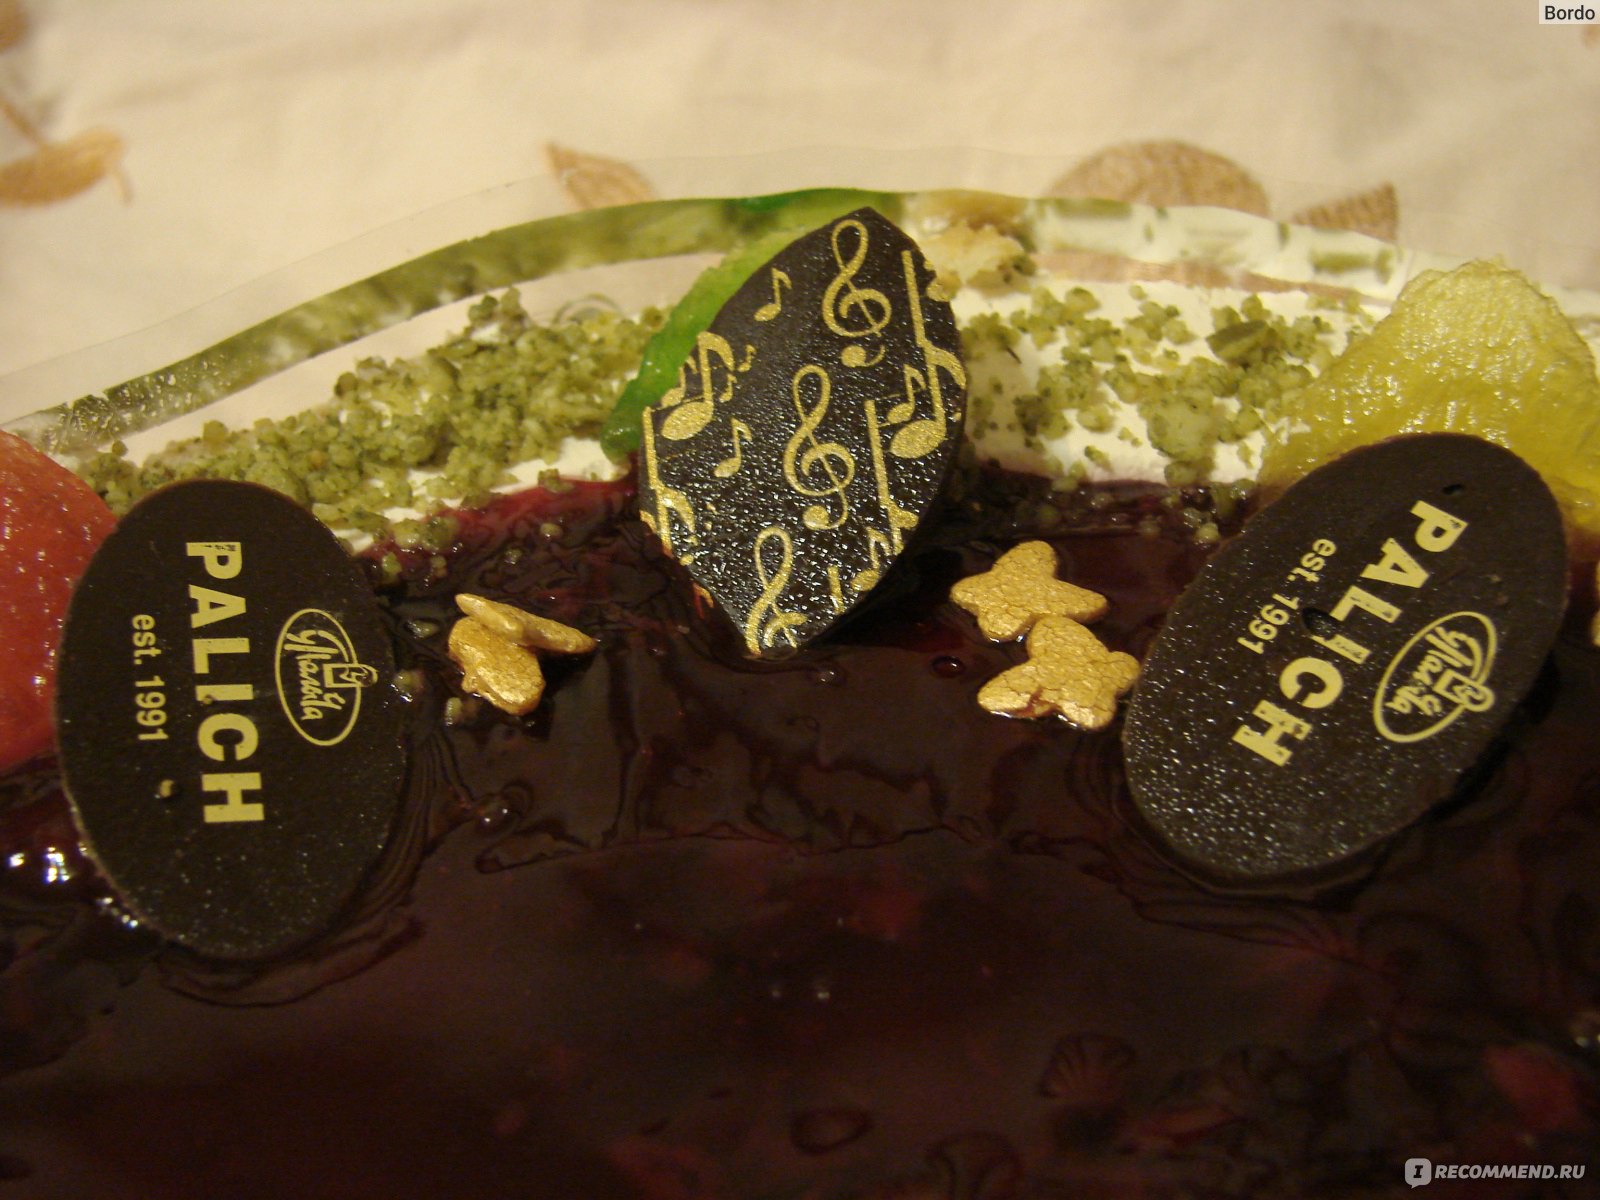 Торт У Палыча Любимый, новый: шоколад для декорирования сверху